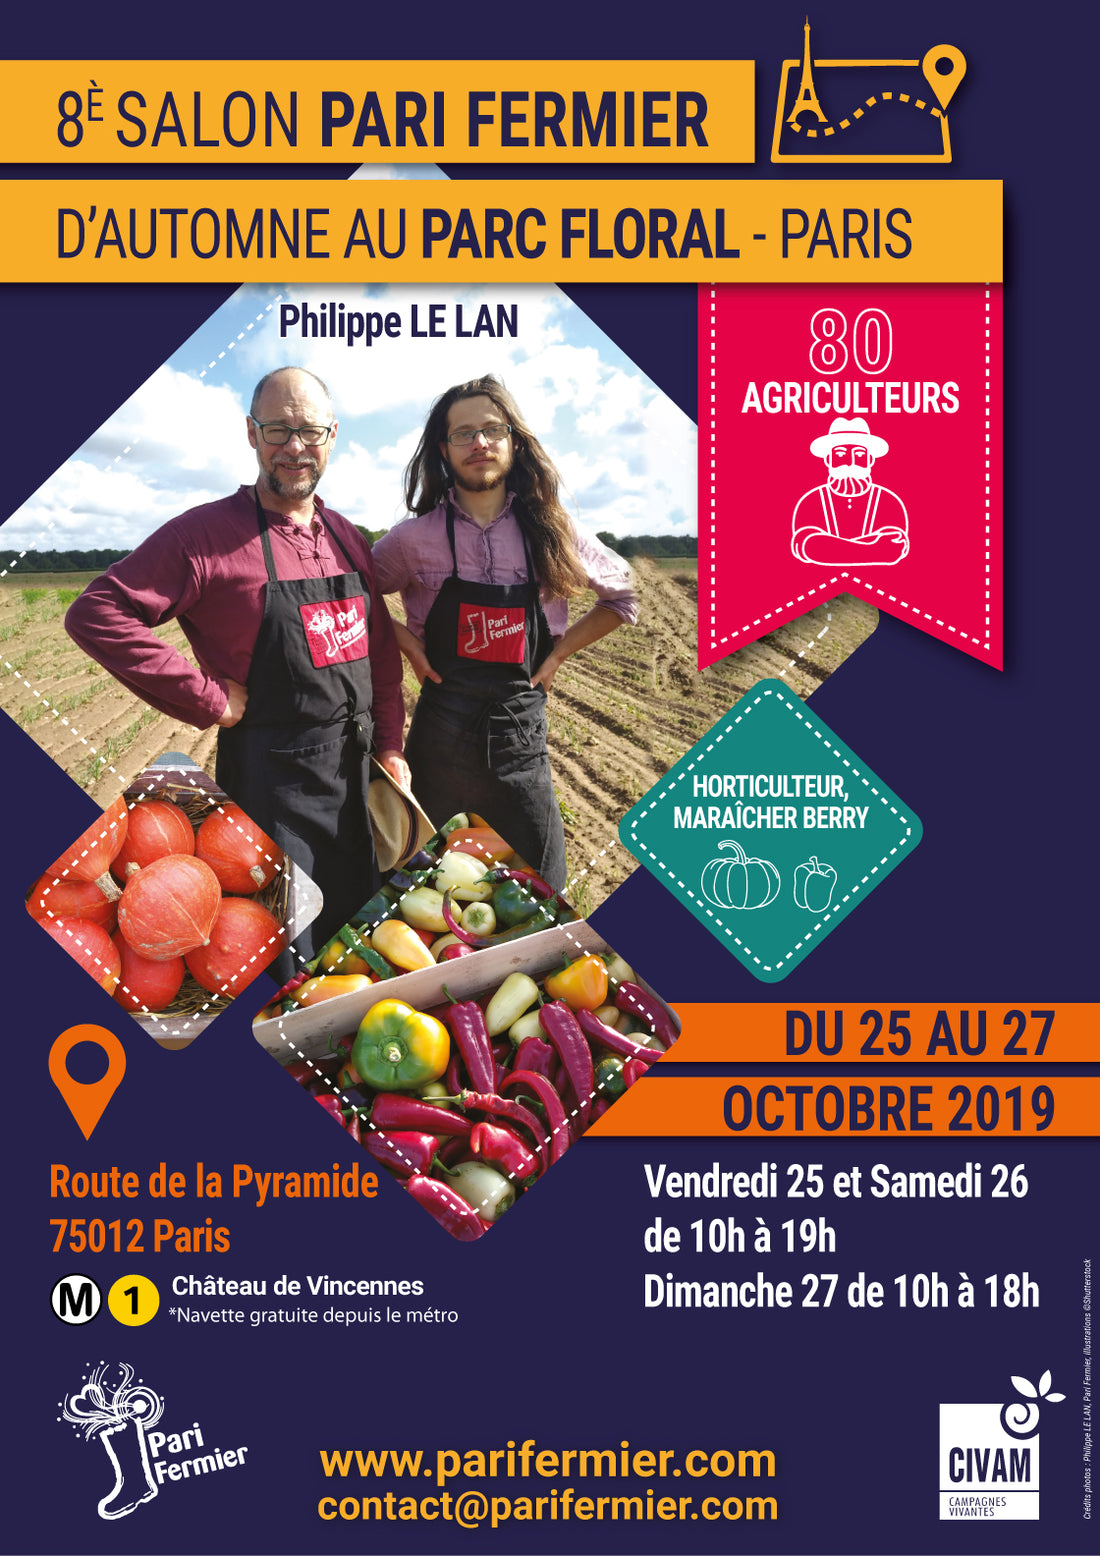 Pari Fermier - Parc Floral de Paris du 25 au 27 octobre